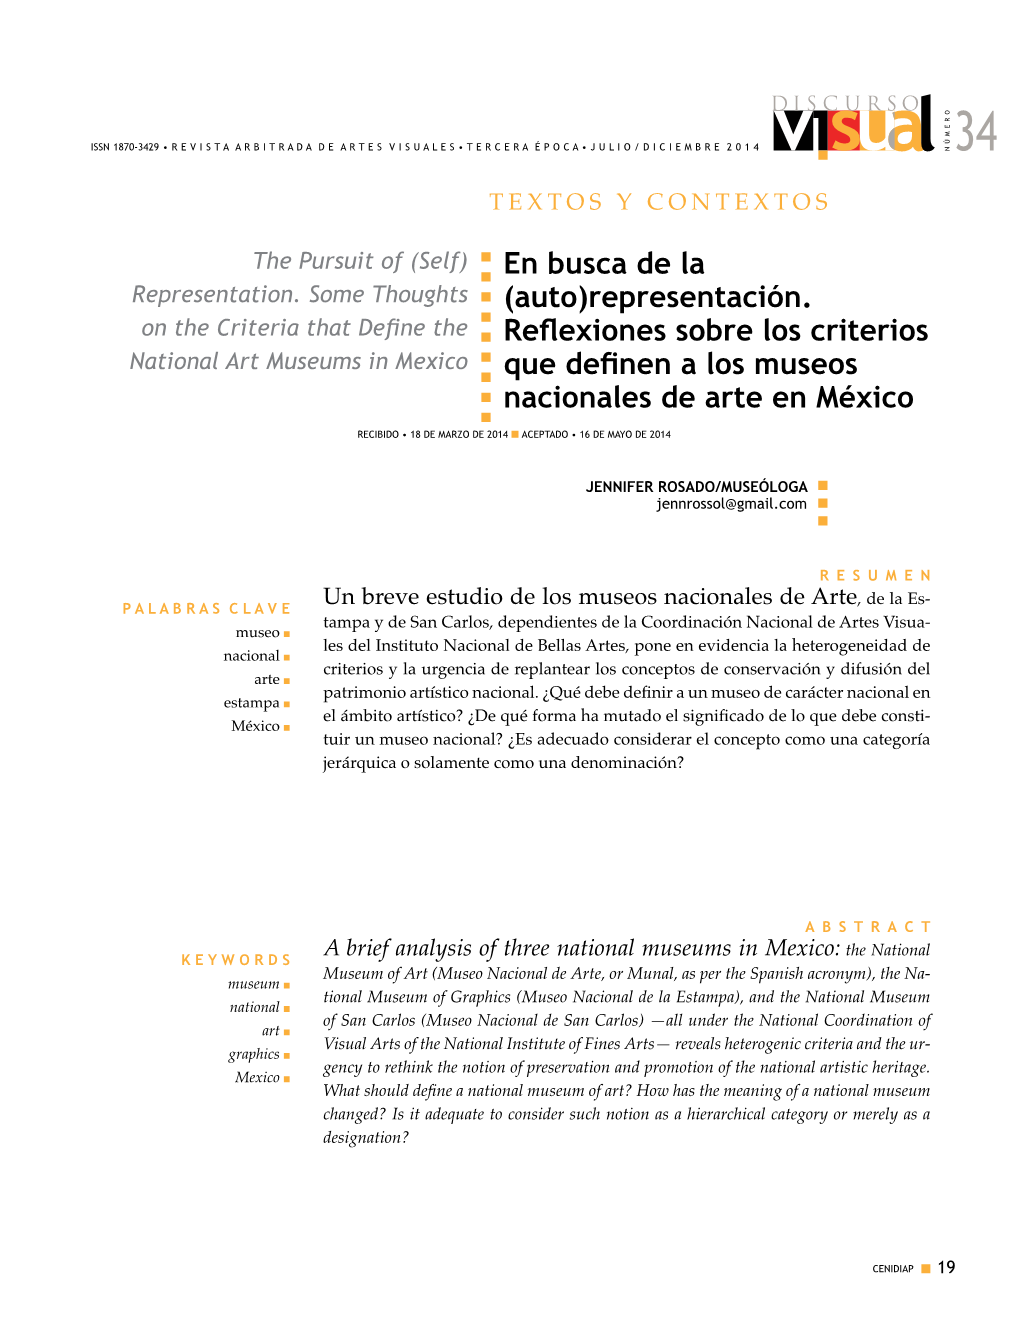 Representación. Reflexiones Sobre Los Criterios Que Definen a Los Museos Nacionales De Arte En México TEXTOS Y JENNIFER ROSADO CONTEXTOS